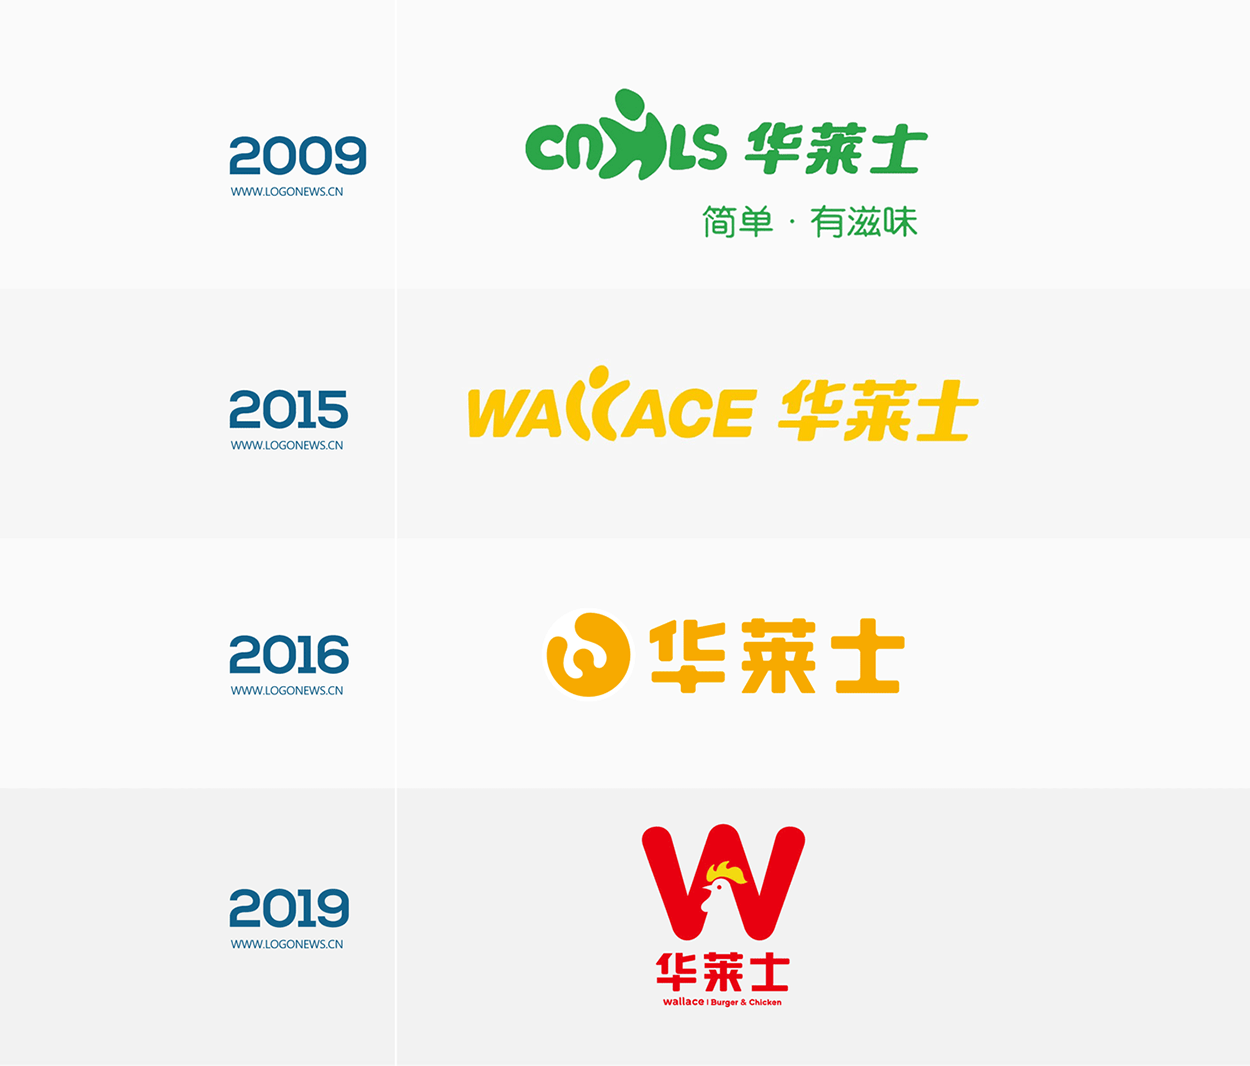 深圳华莱士品牌logo设计含义